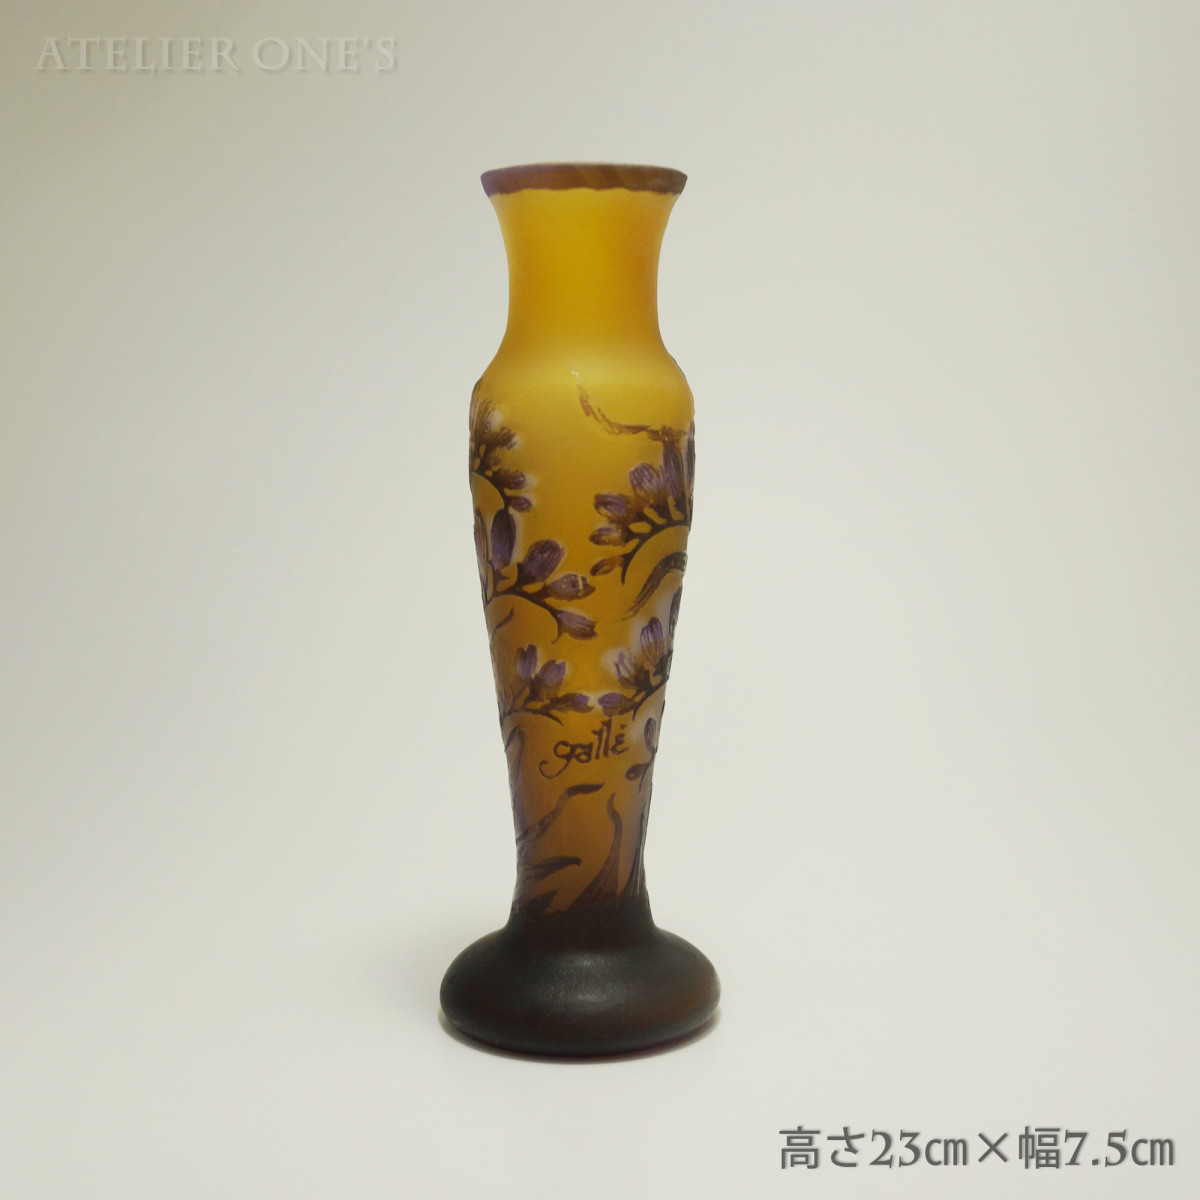 証明書付】【希少】 エミールガレ 花瓶 高23cm 幅7.5cm カメオ彫り 